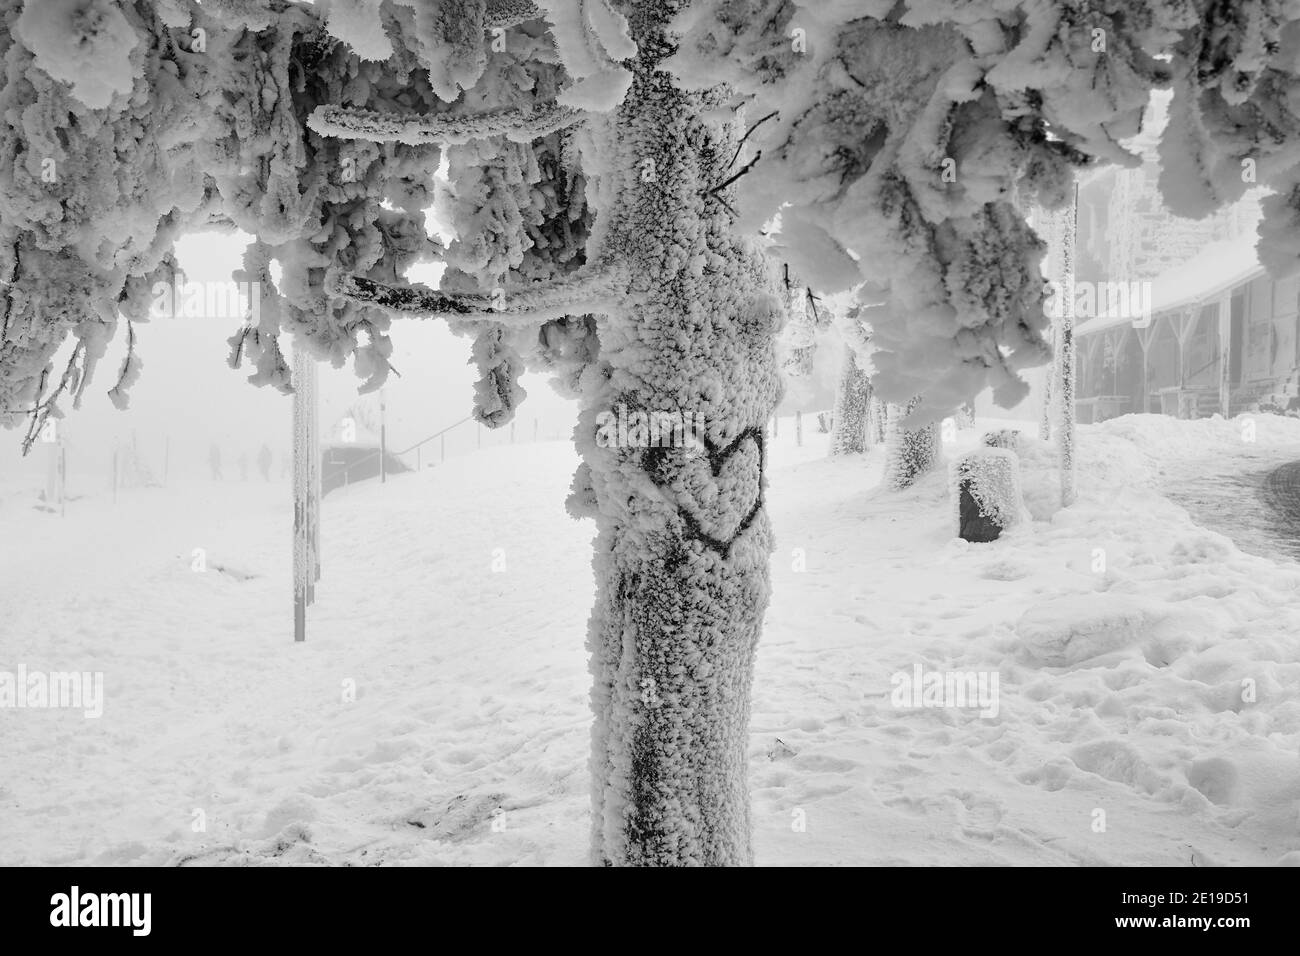 Cuore che si disegna su un tronco d'albero innevato in uno scenario invernale Foto Stock